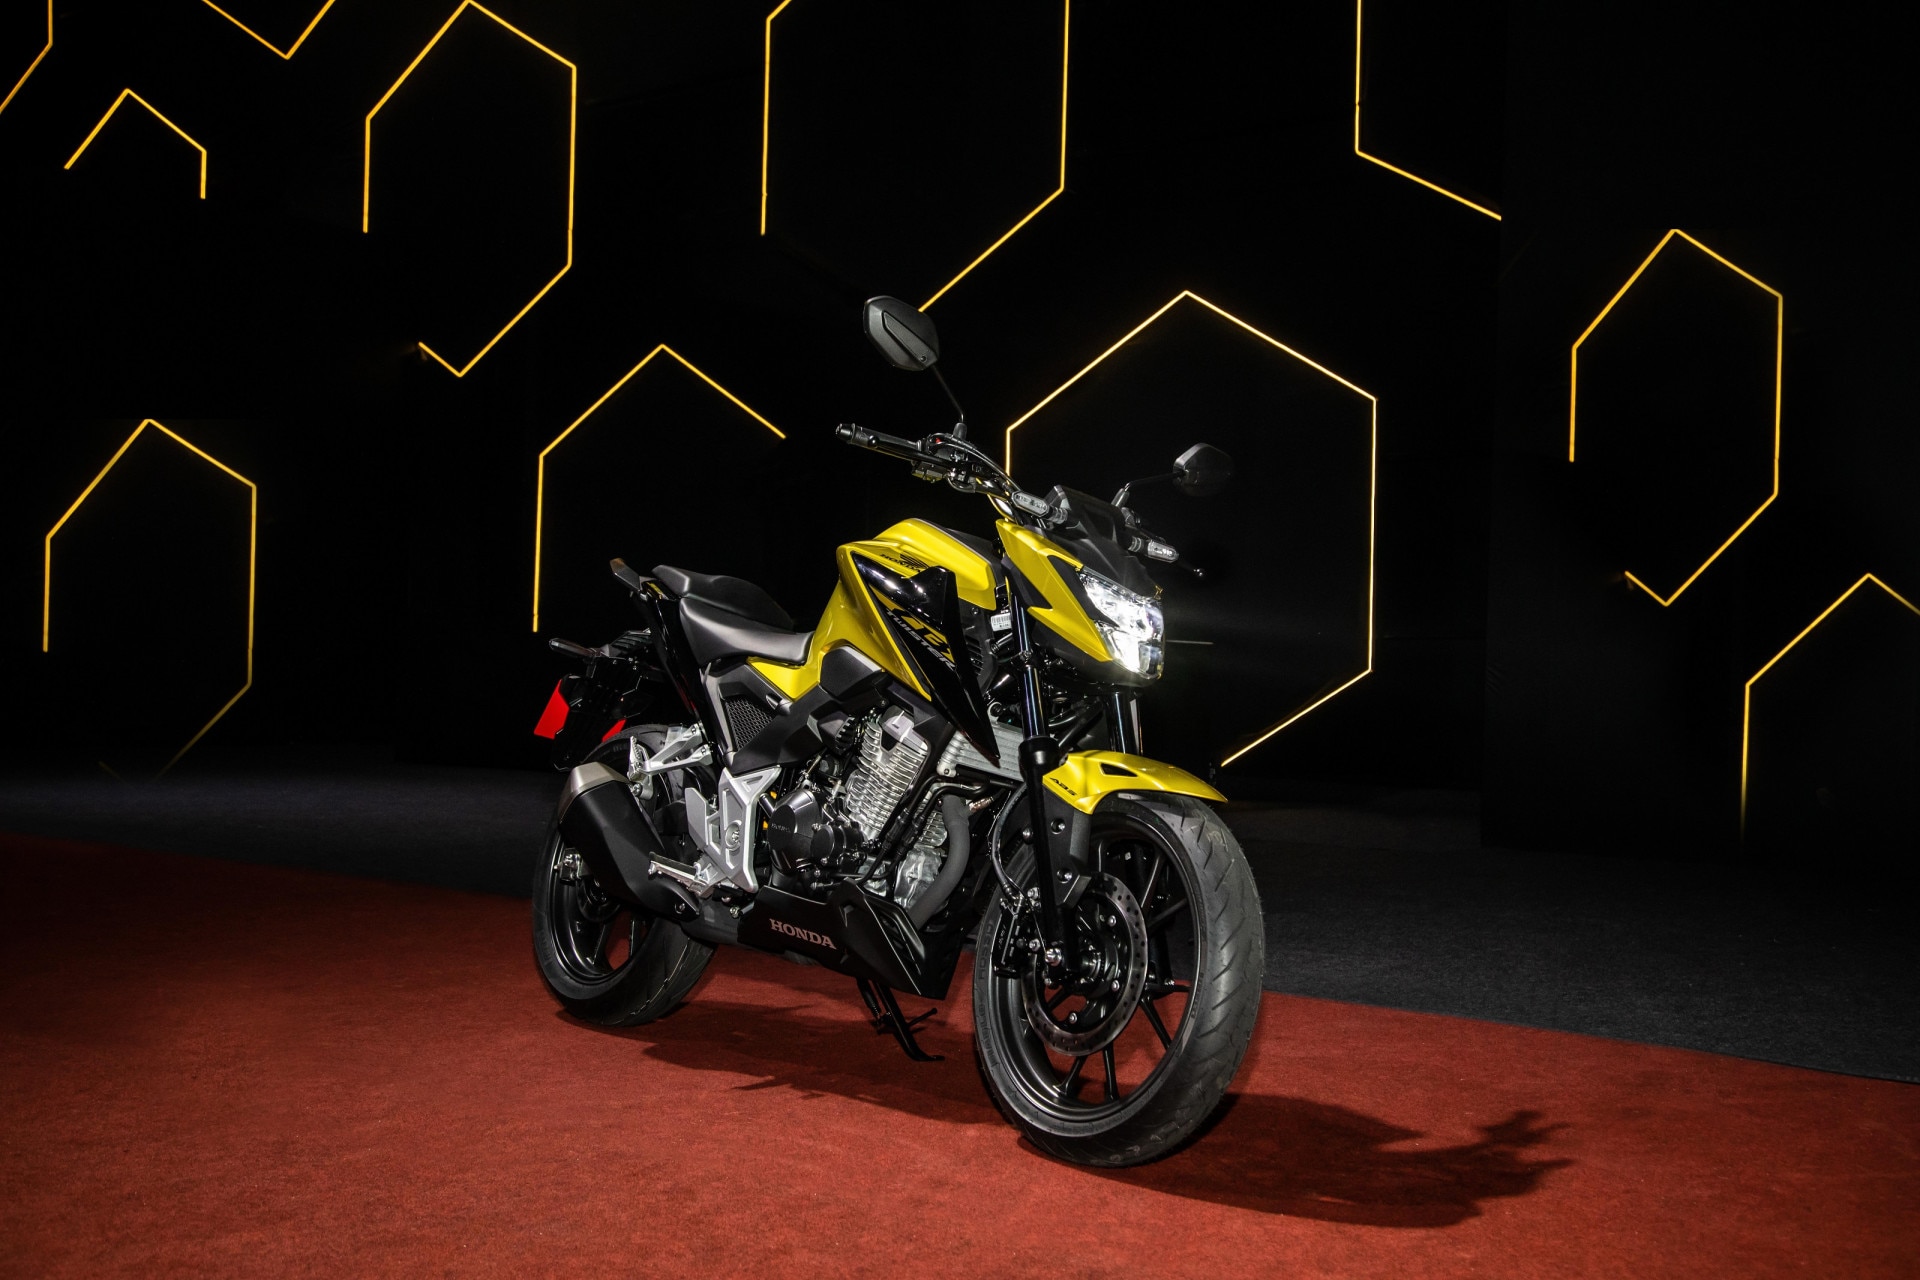 Dafra mostra nova scooter Cruisym de 150 cc; conheça, Mobilidade Estadão